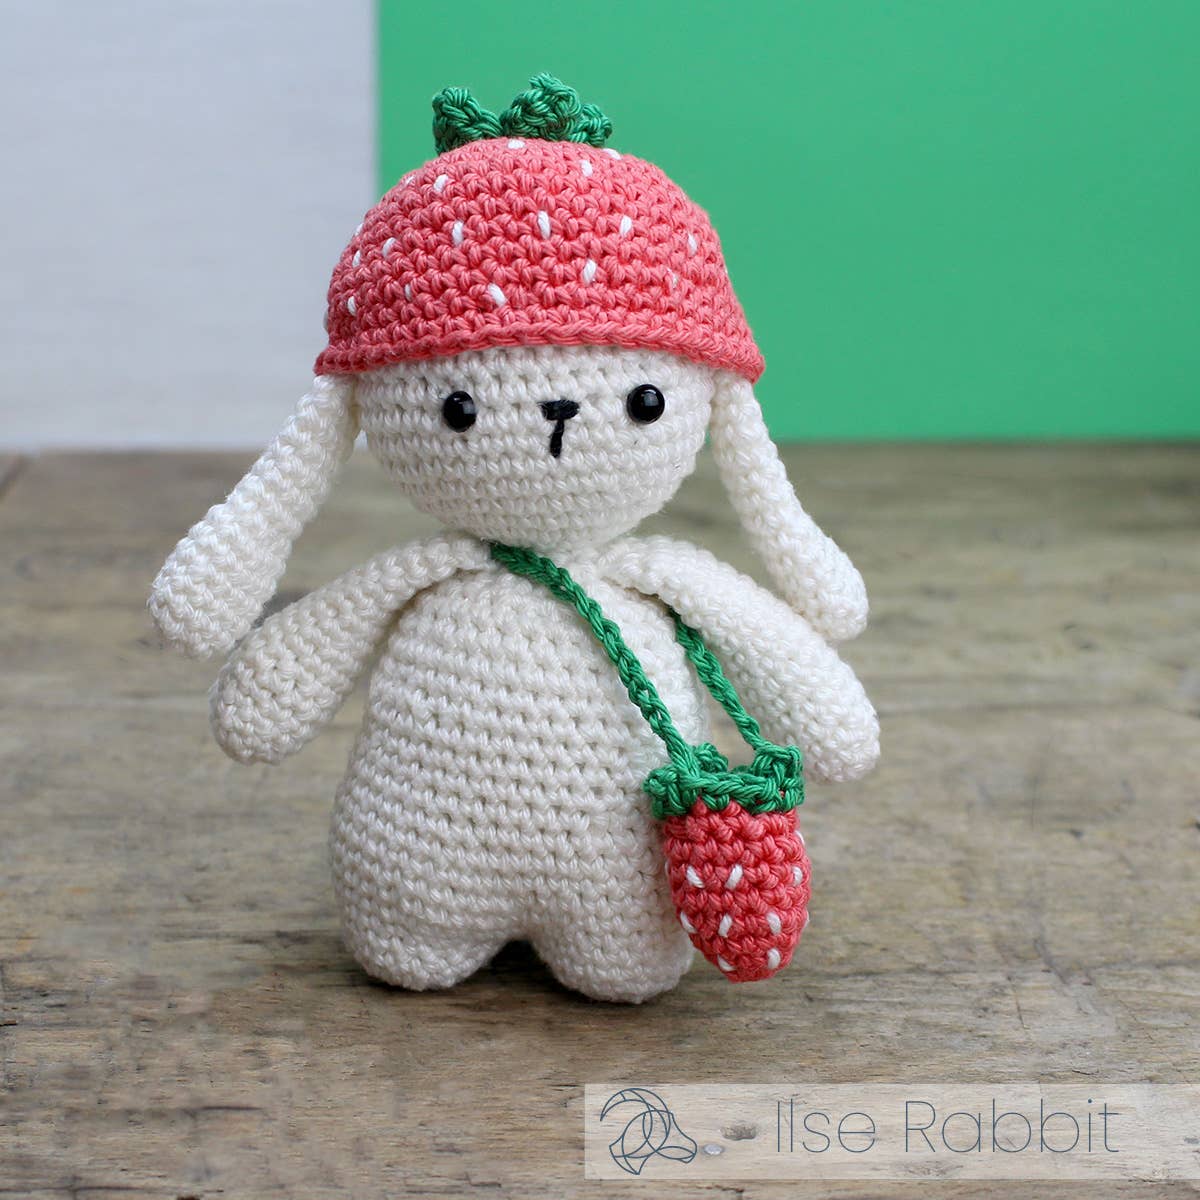 Hardicraft DIY Crochet Kit - Ilse Rabbit Yarn